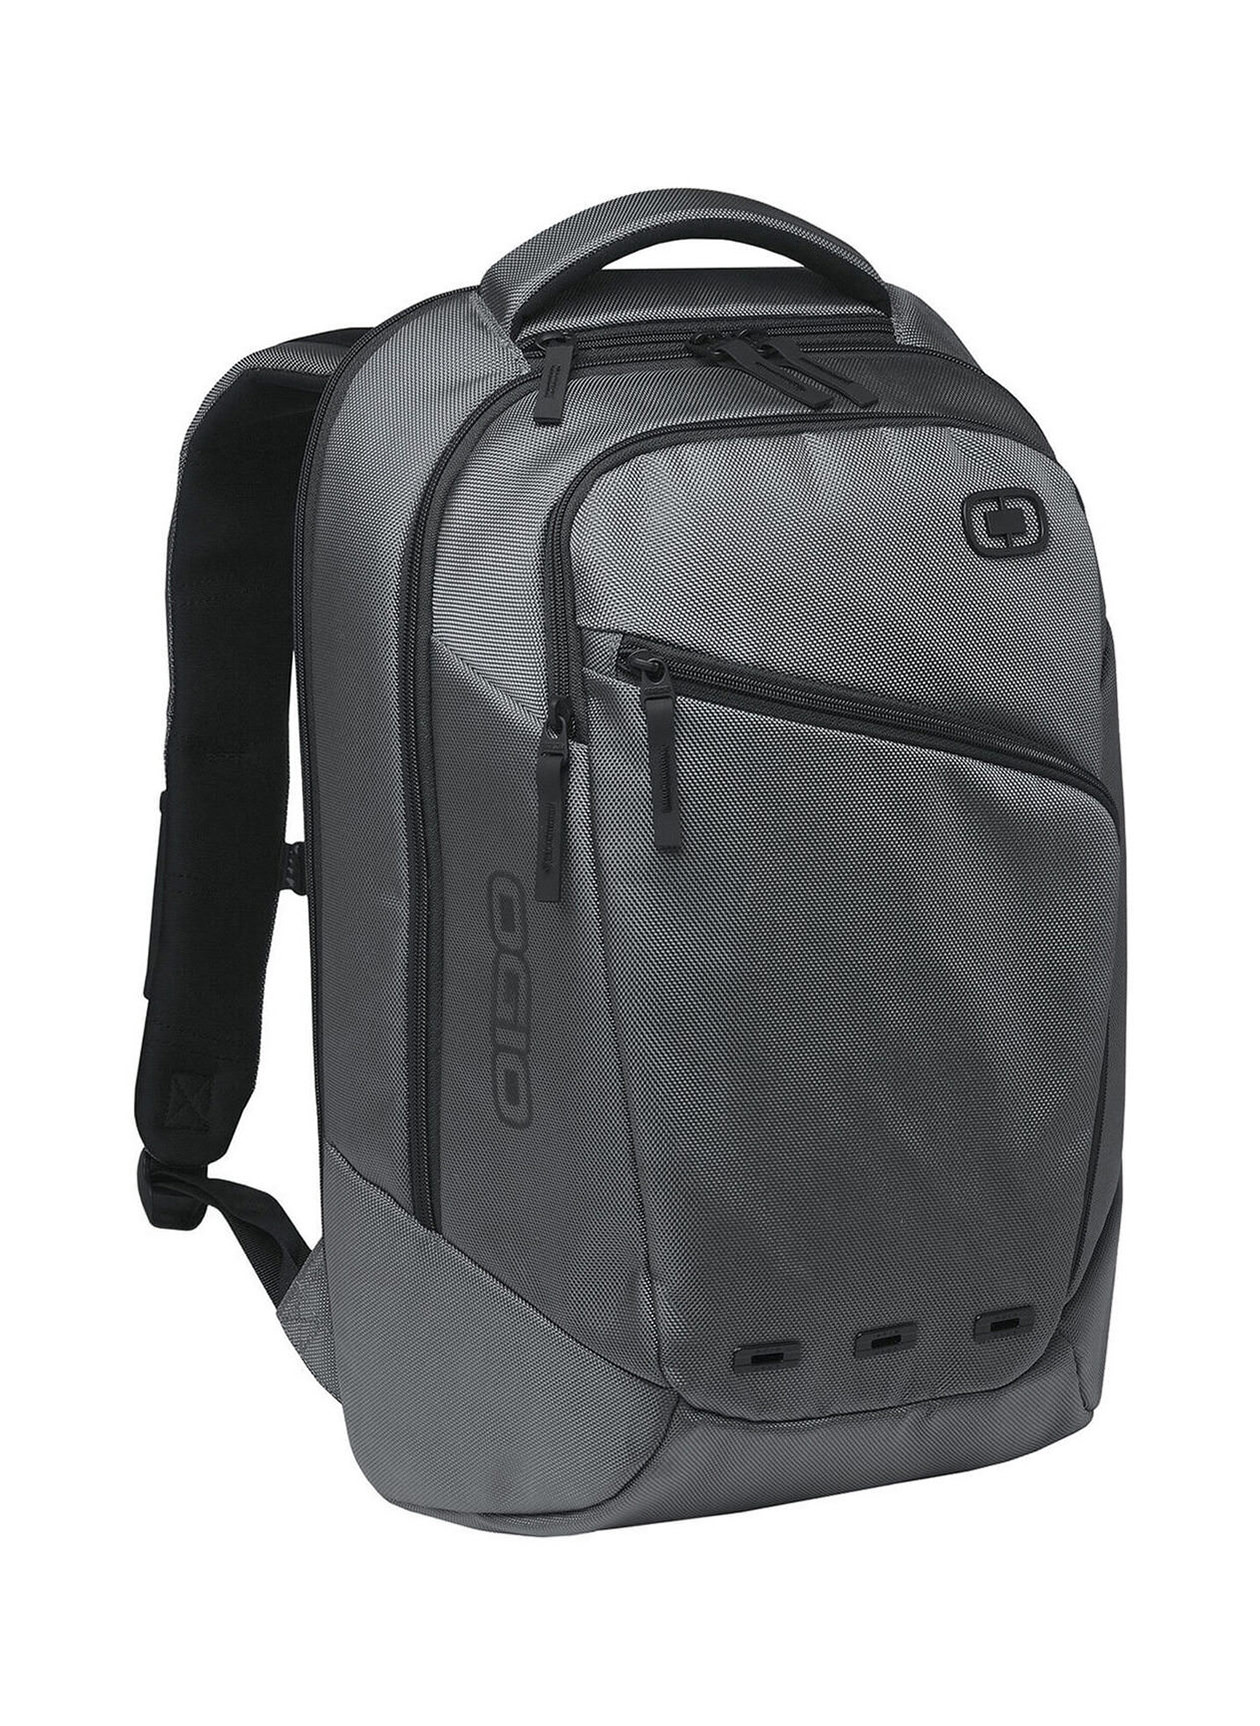 OGIO Metallic Ace Backpack